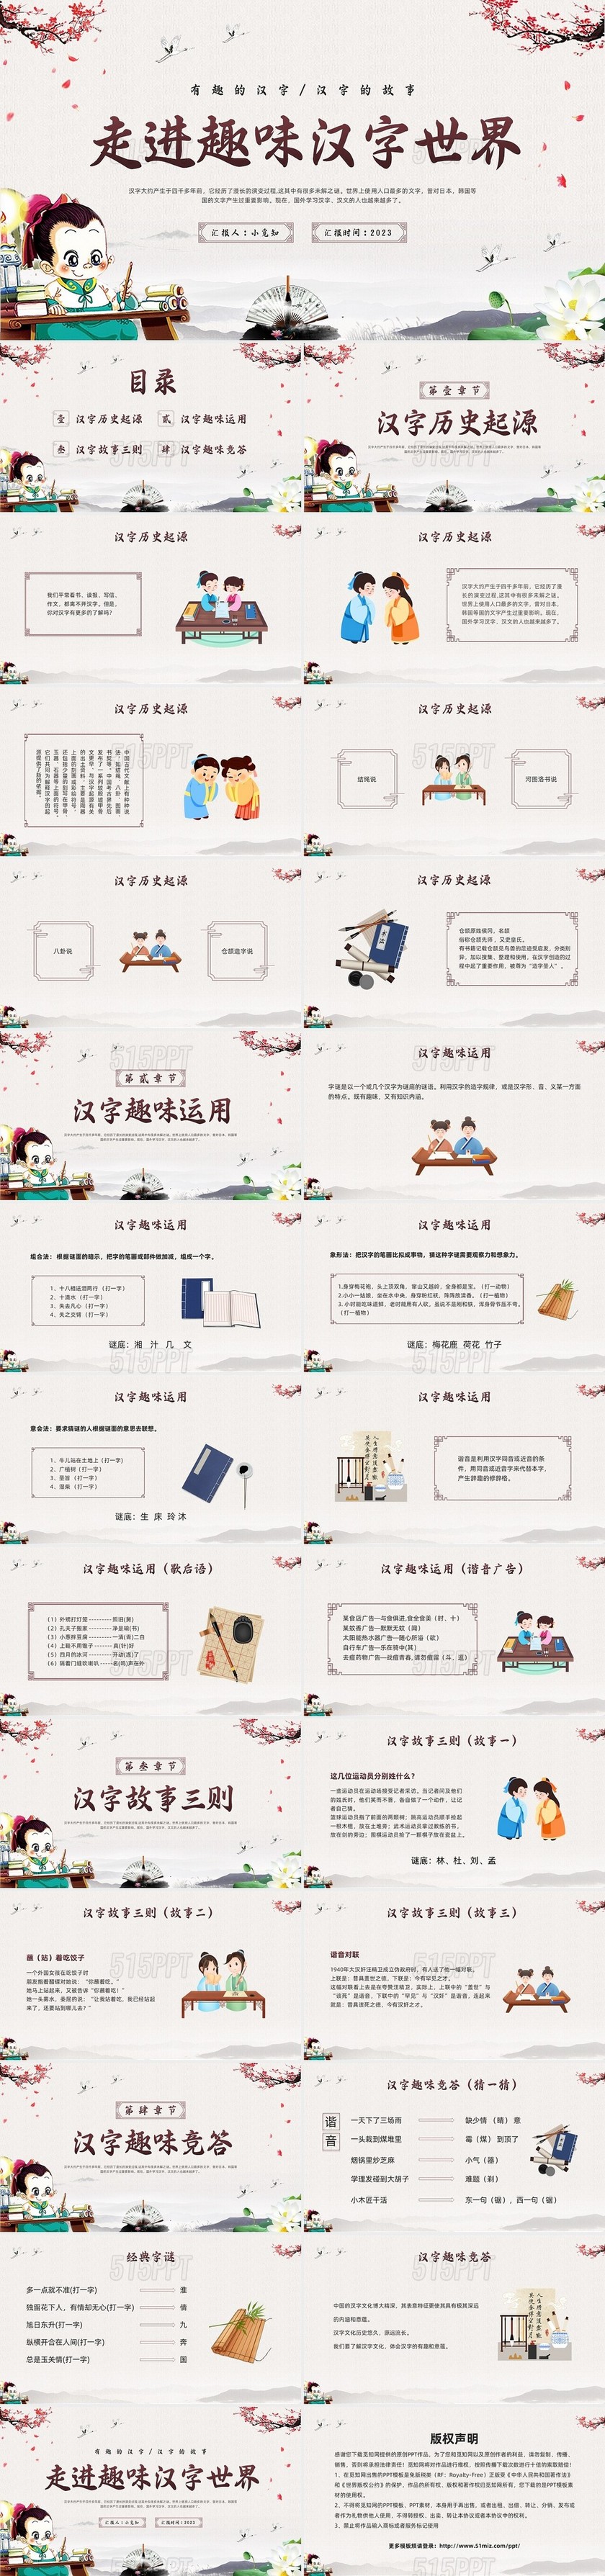 棕色古风走进趣味汉字世界PPT模板宣传PPT动态PPT中国传统文化汉字